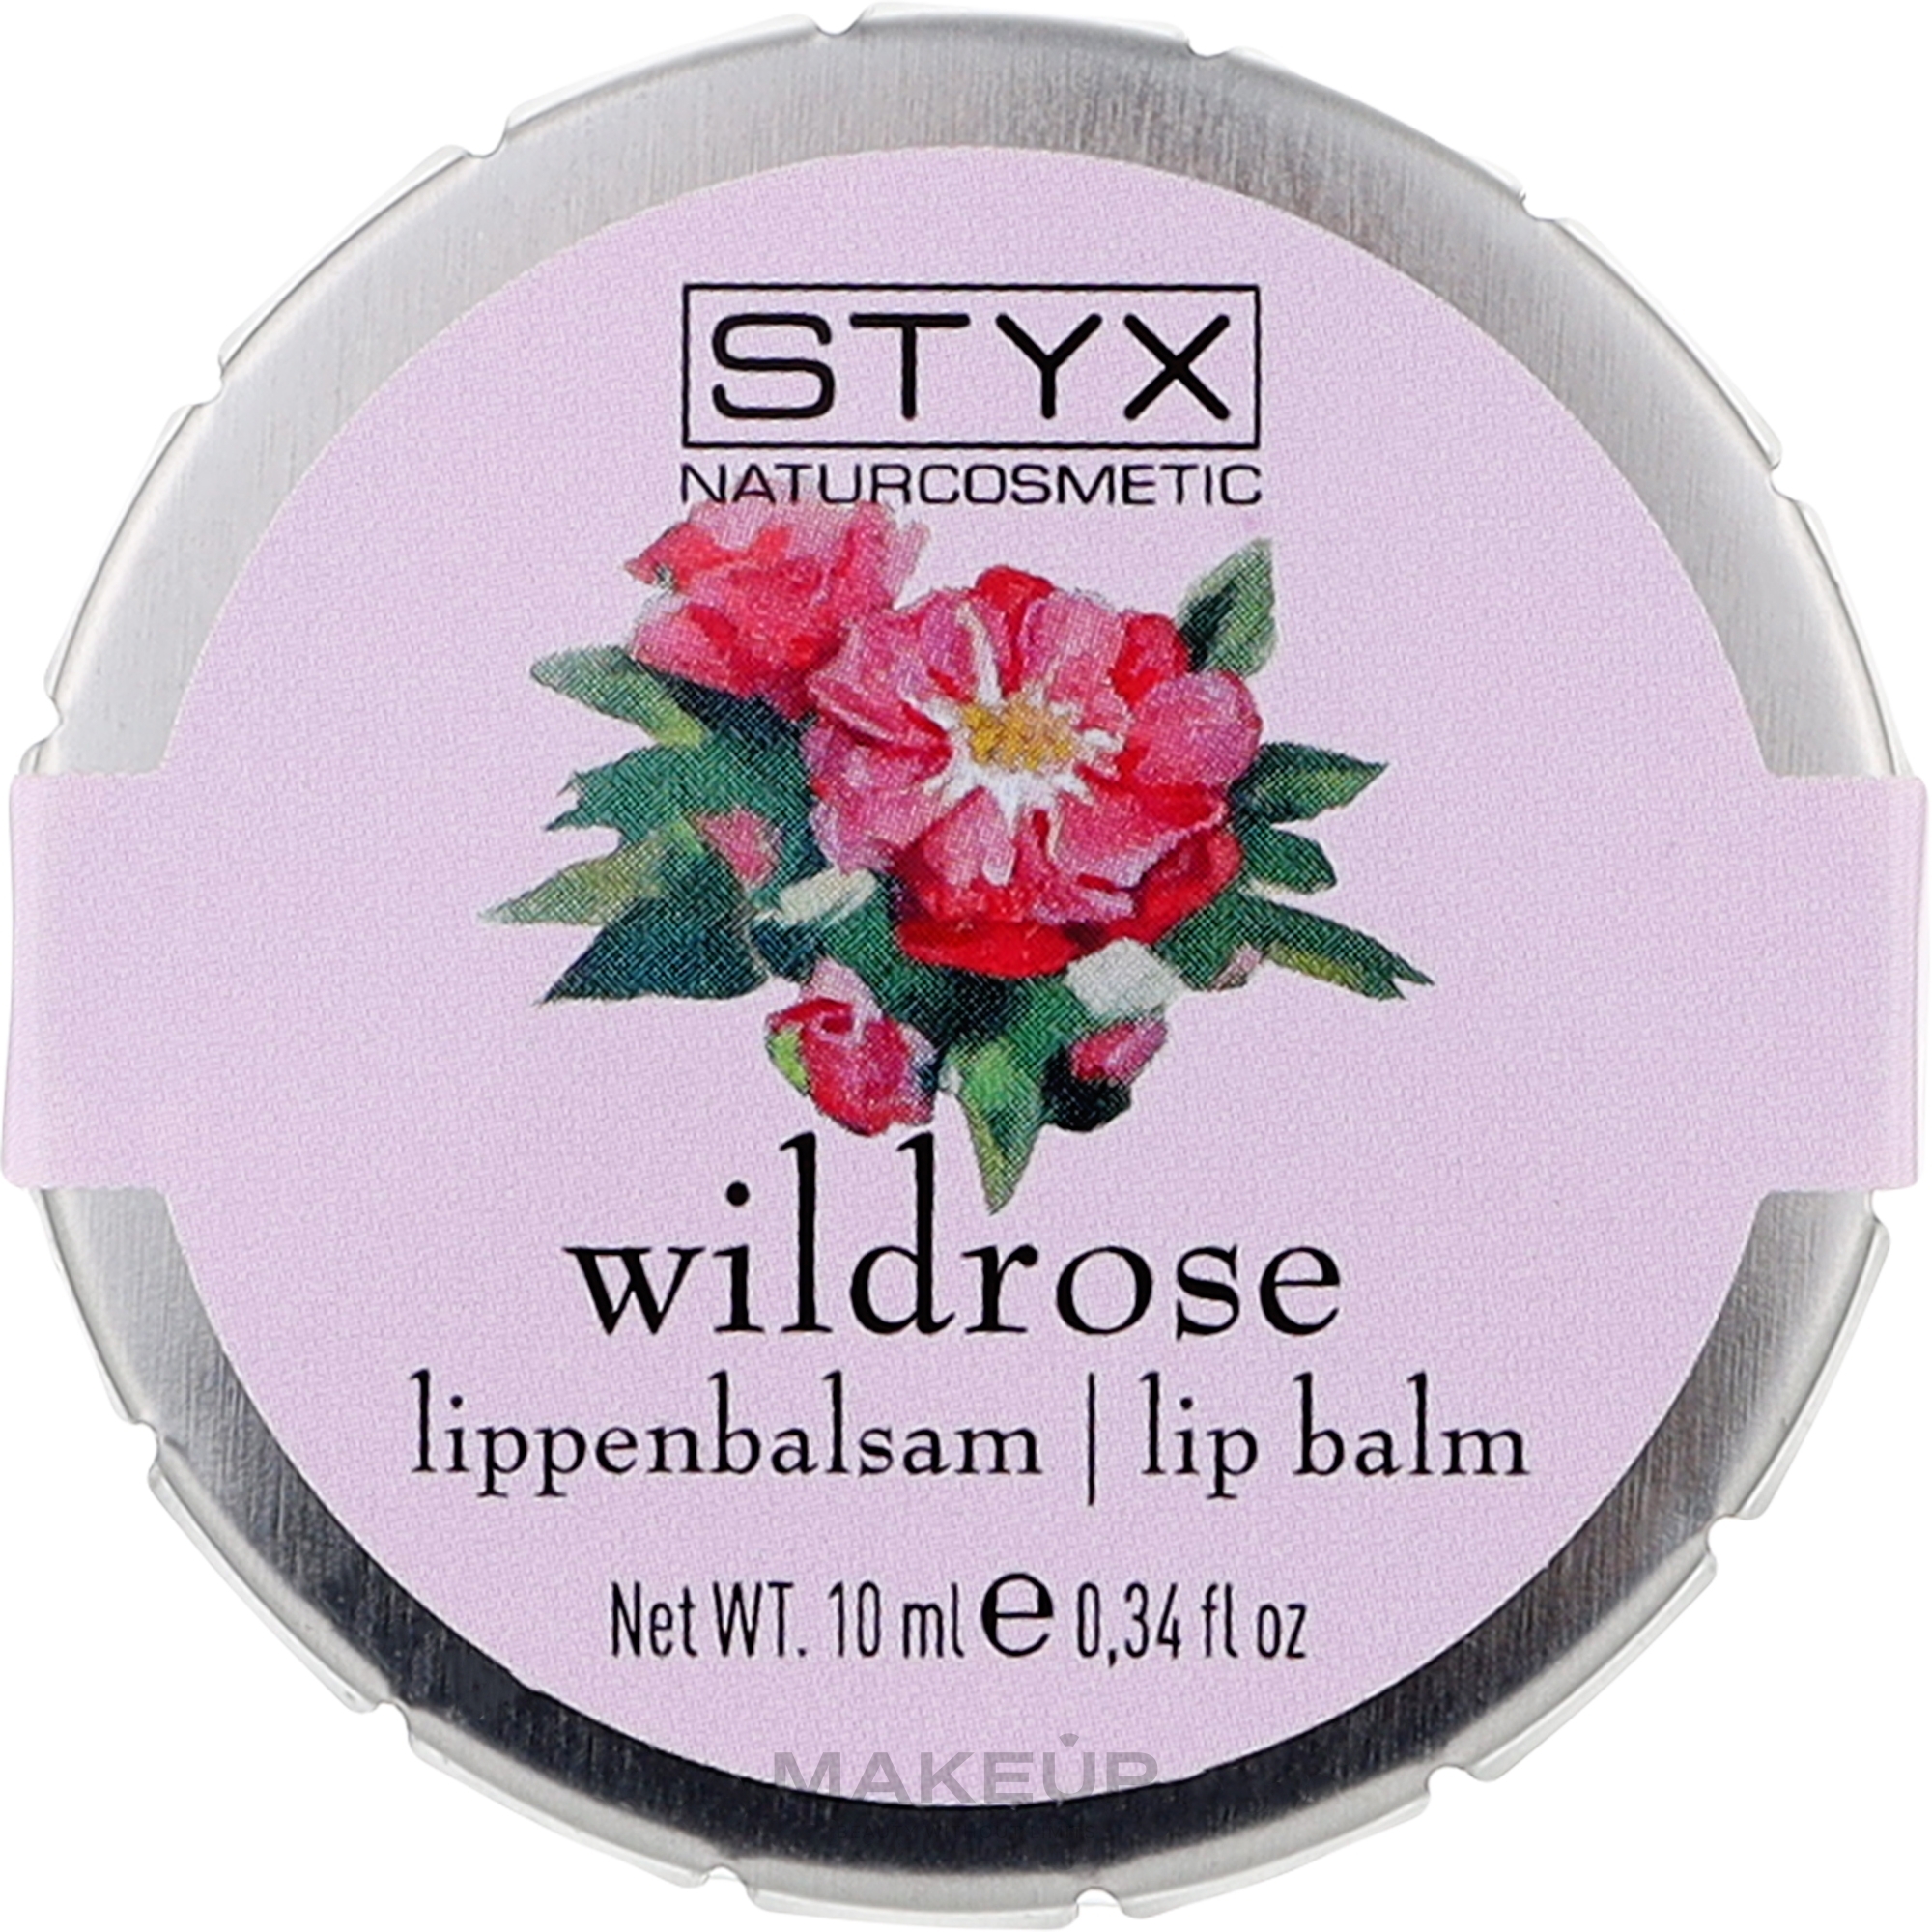 Lippenbalsam wilde Rose - Styx Naturcosmetic Wild Rose Lip Balm  — Bild 20 ml